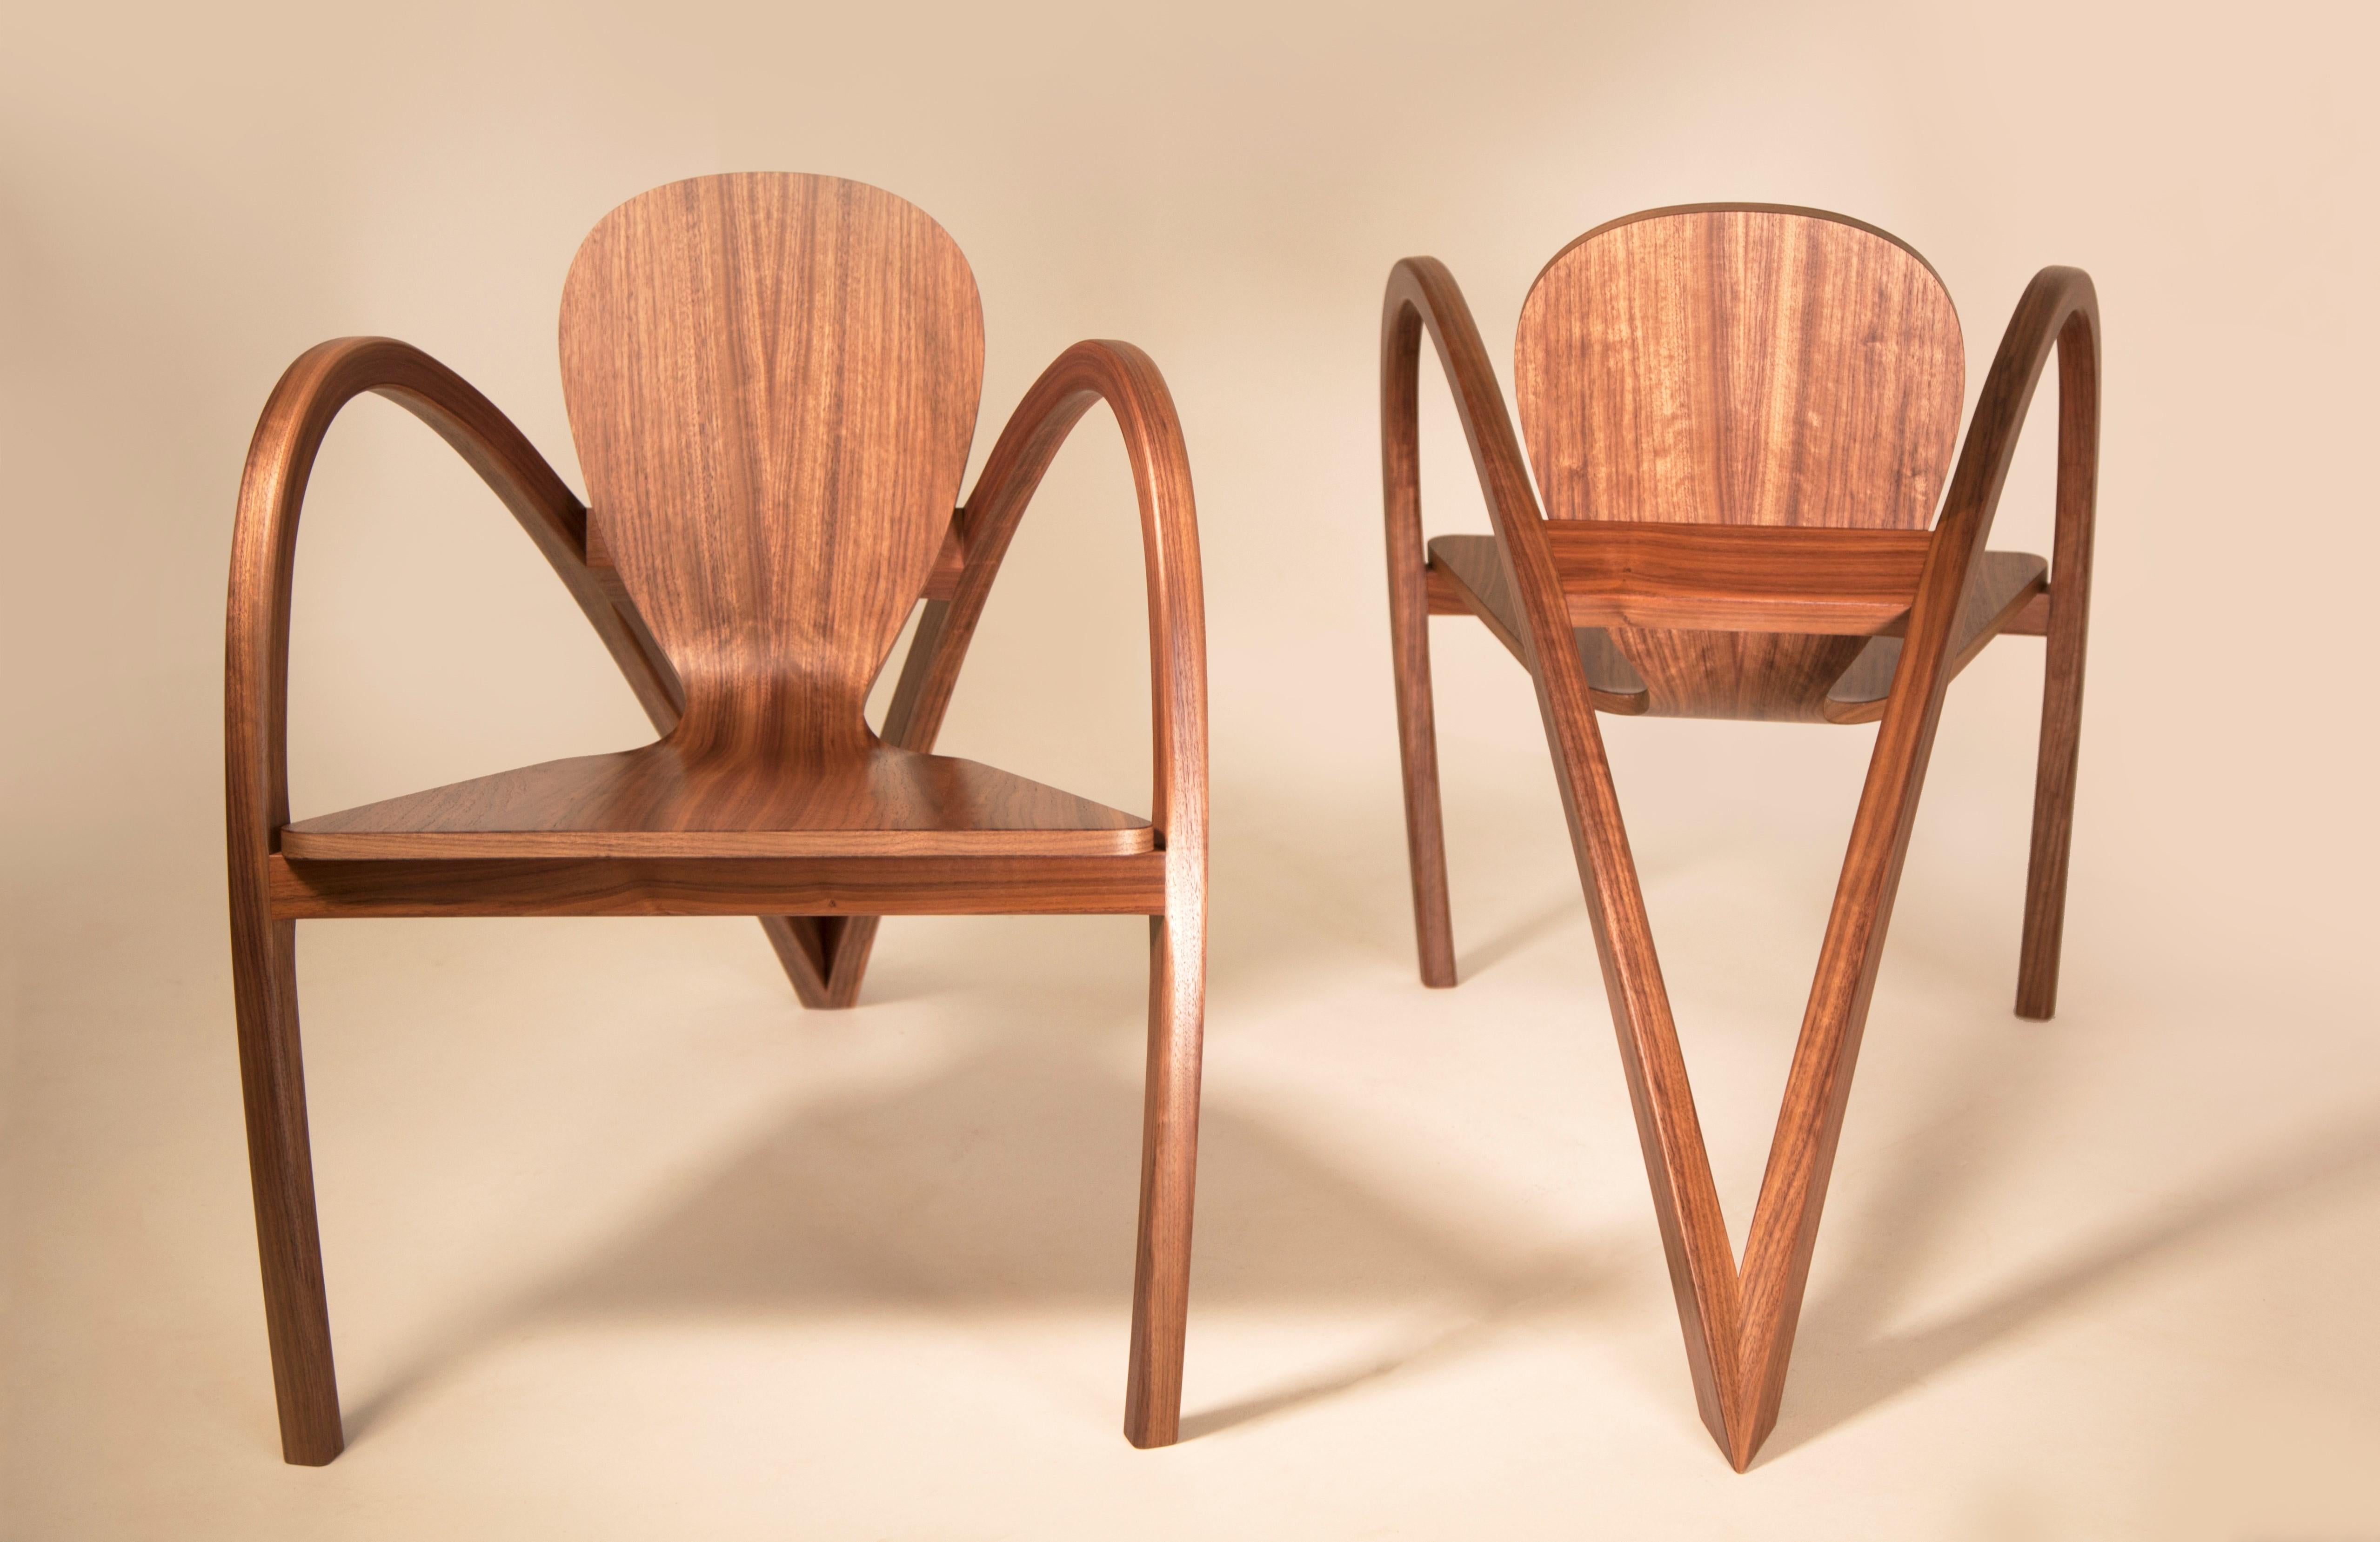 Une étonnante paire de chaises qui rend hommage aux formes et lignes emblématiques des automobiles des années 1930. Nos chaises sont méticuleusement fabriquées à la main dans notre studio de Westhampton Beach à l'aide de plus de 50 couches de